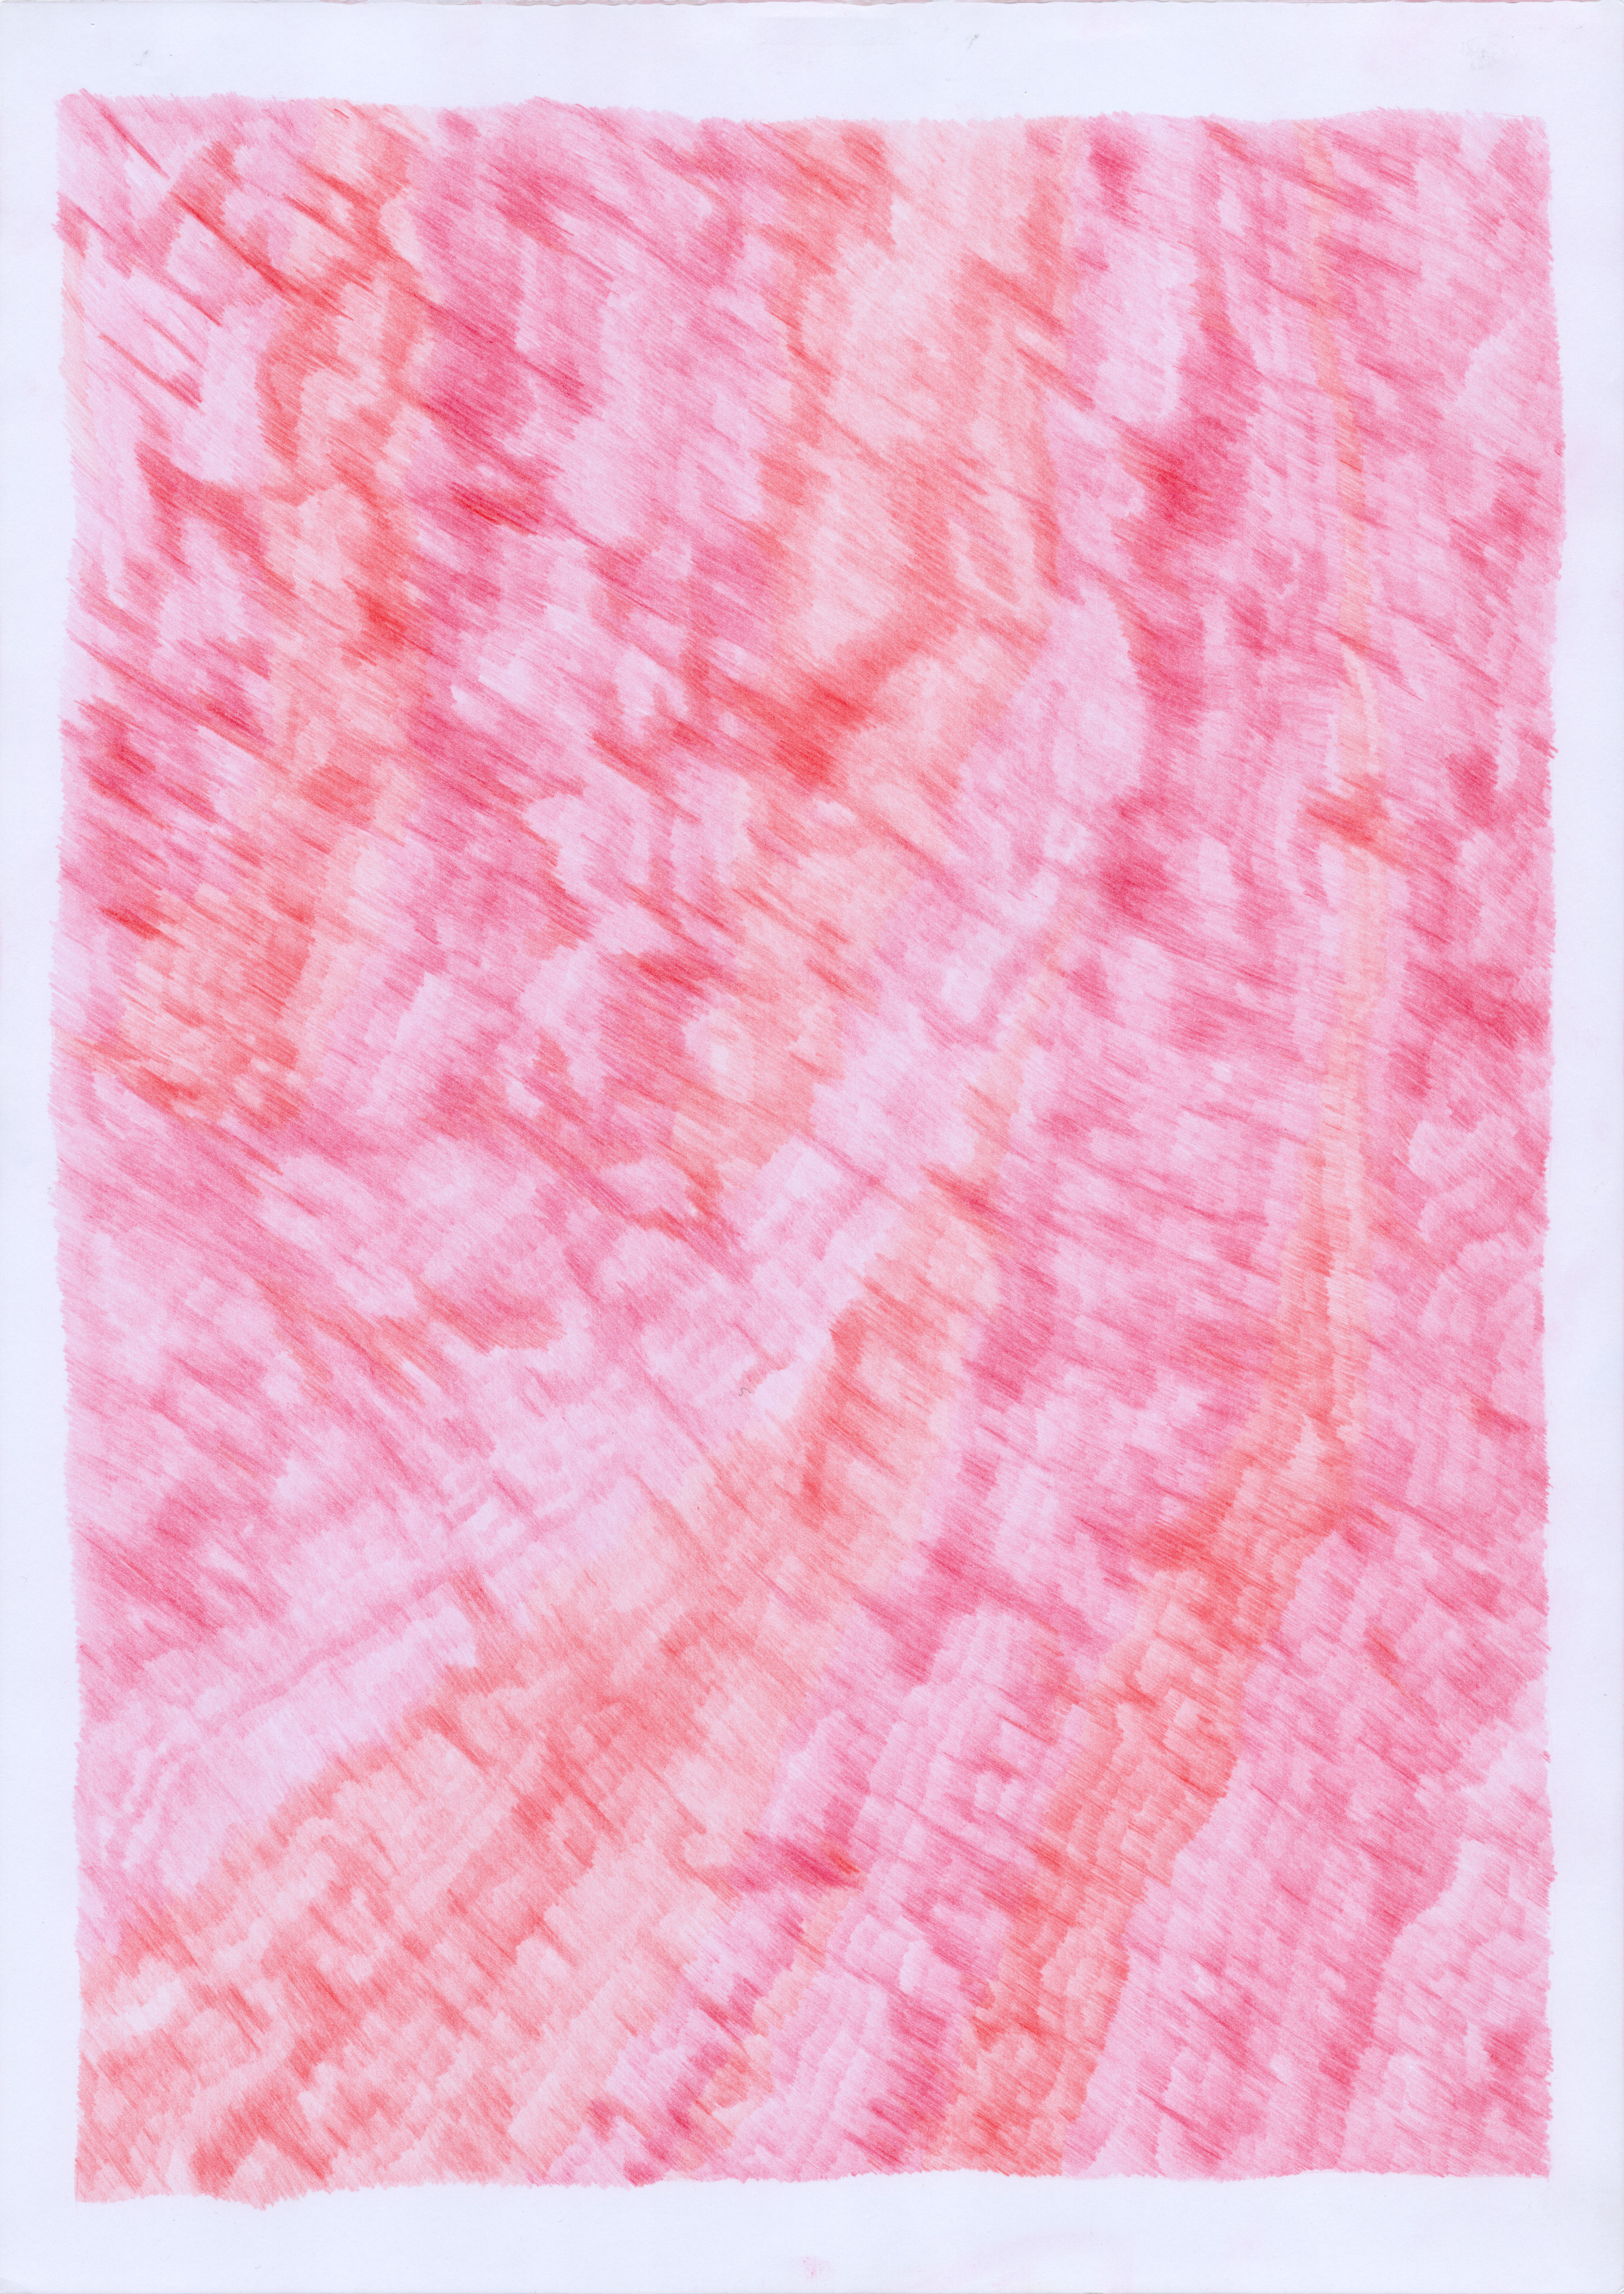 Leuchten, 2016, colour pencil on paper, A3